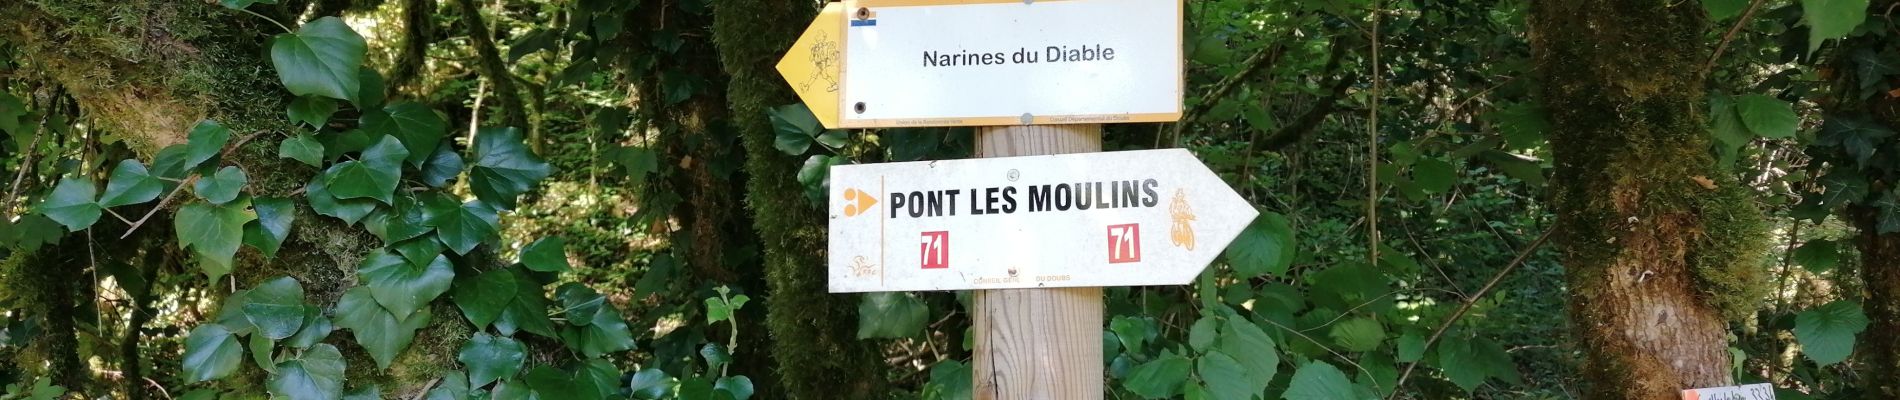 Trail Walking Pont-les-Moulins - 2020 07 12 Guillon, les narines du diable - Photo